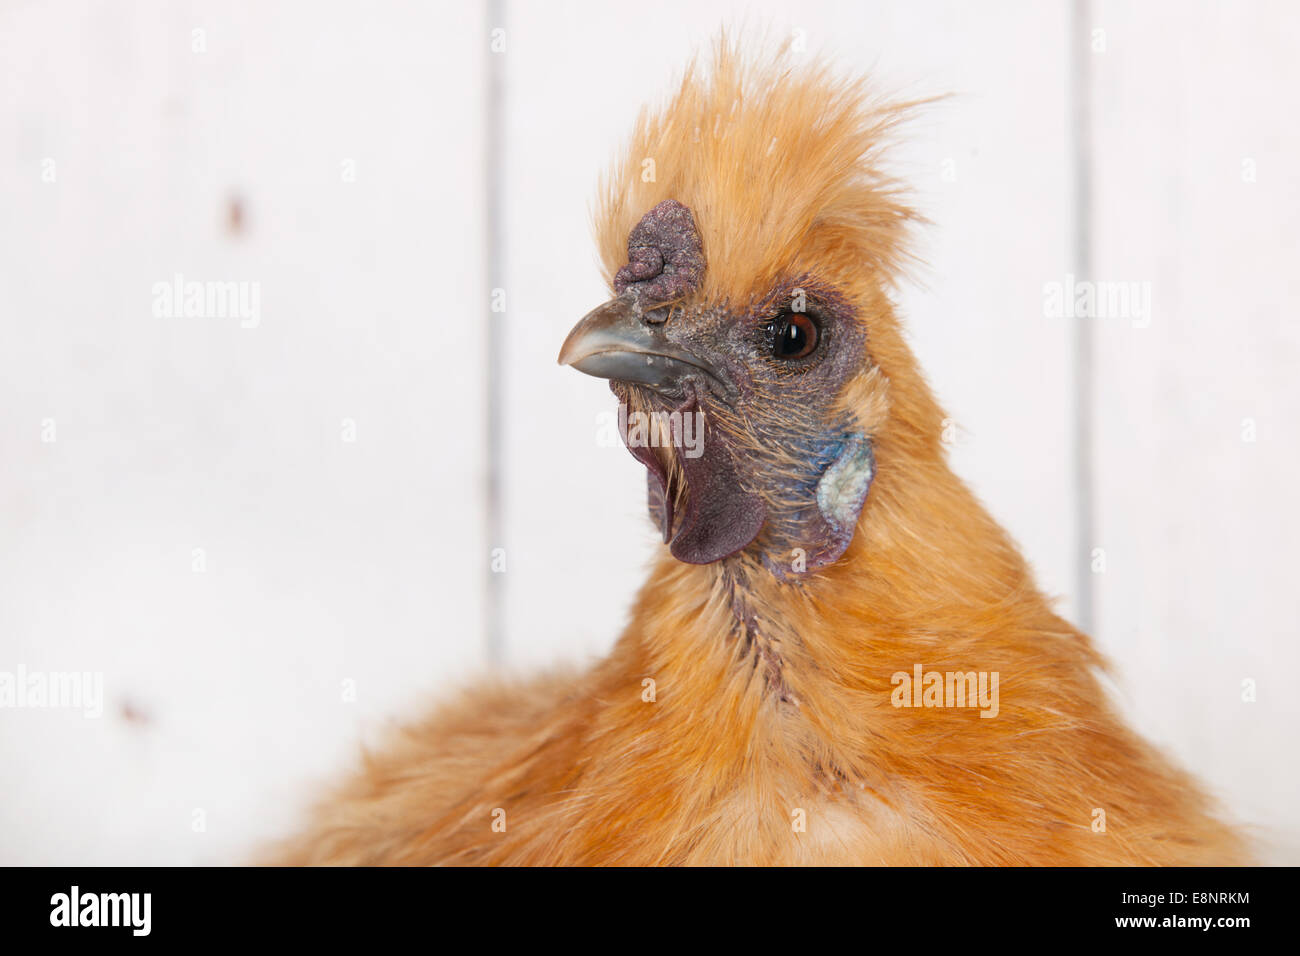 Leiter der braunen Silkie Hühner im Hühnerstall Stockfotografie - Alamy